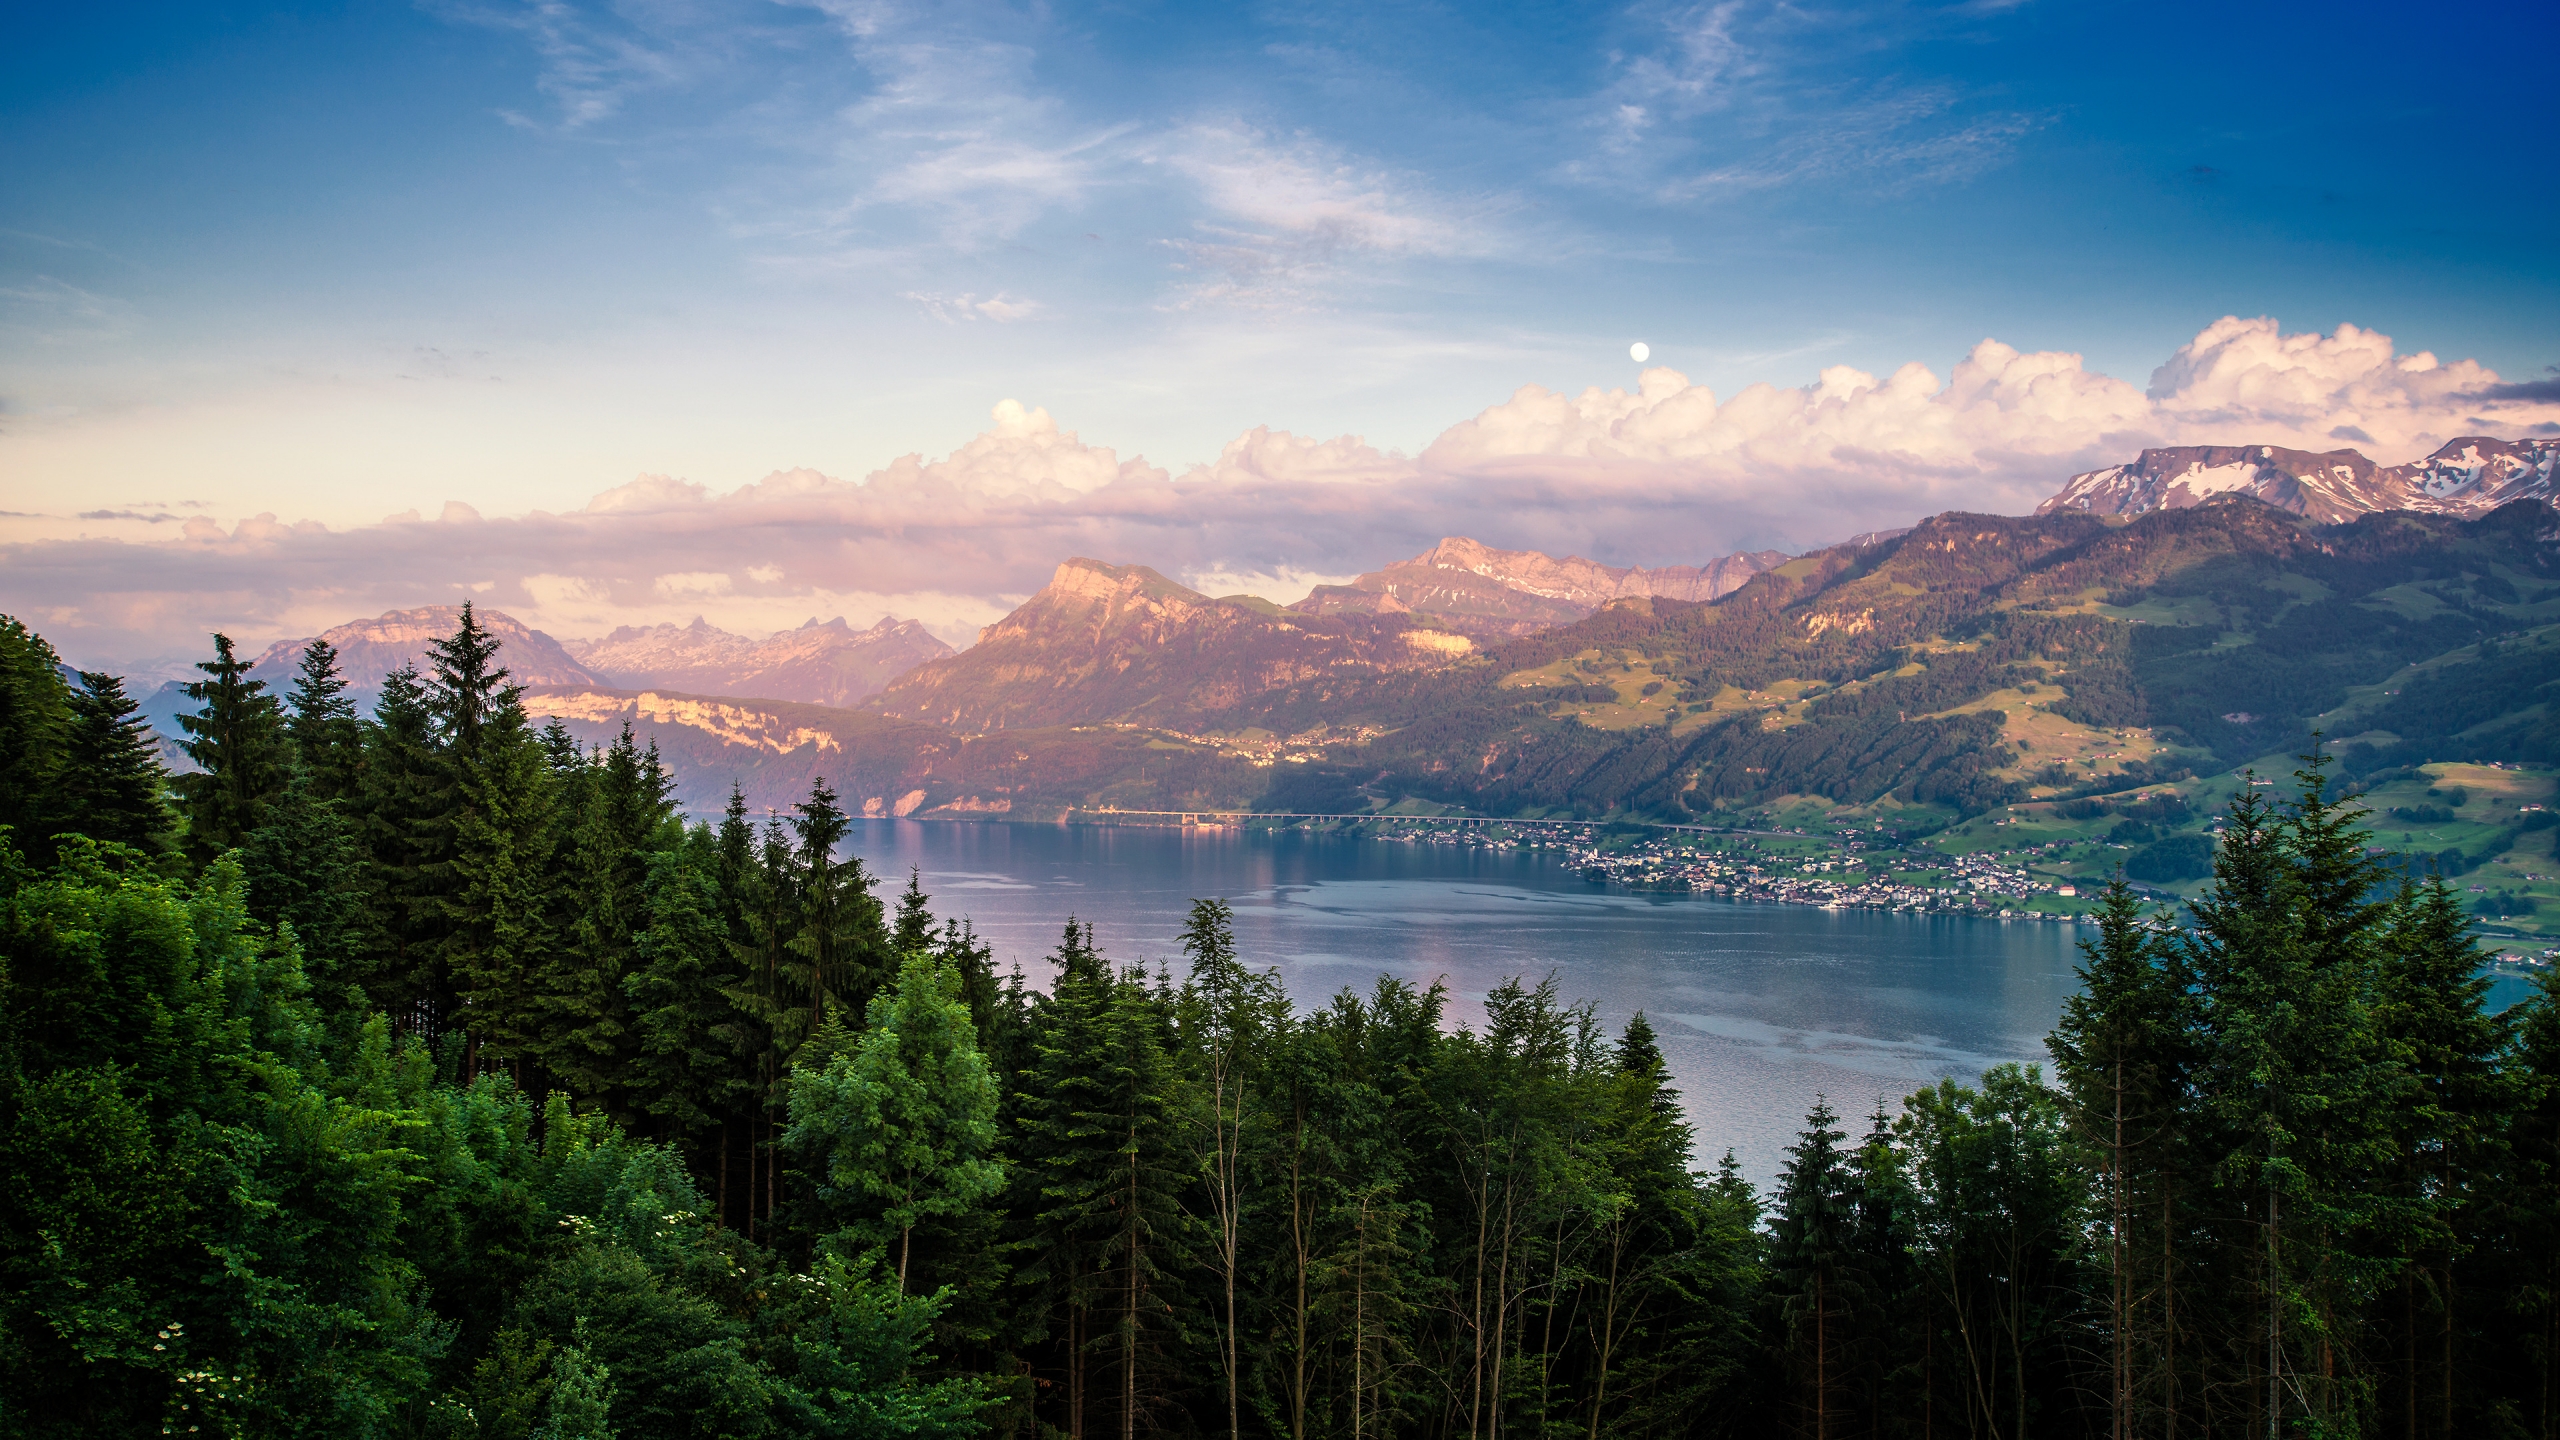 Lake Zurich Landscape for 2560x1440 HDTV resolution